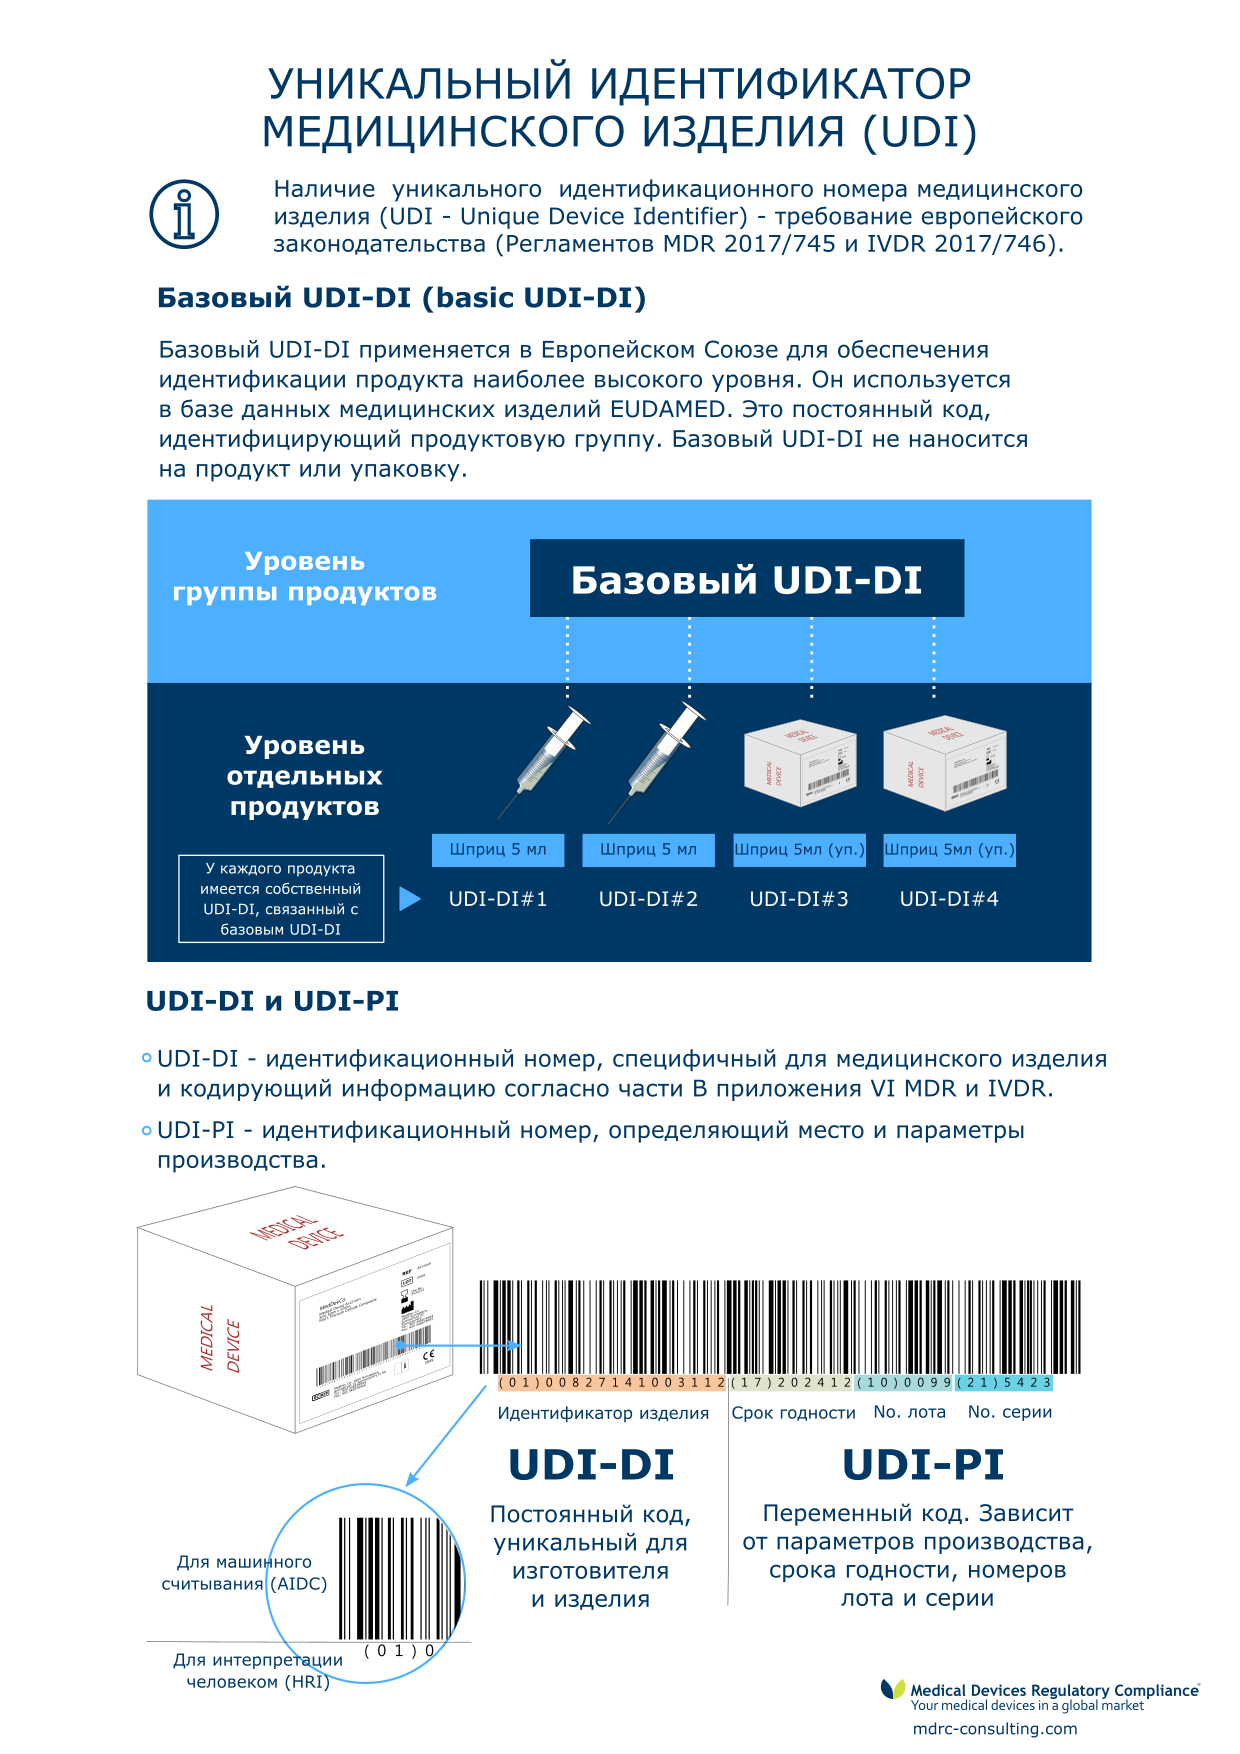 UDI - уникальный идентификатор медицинского изделия в Европейском Союзе